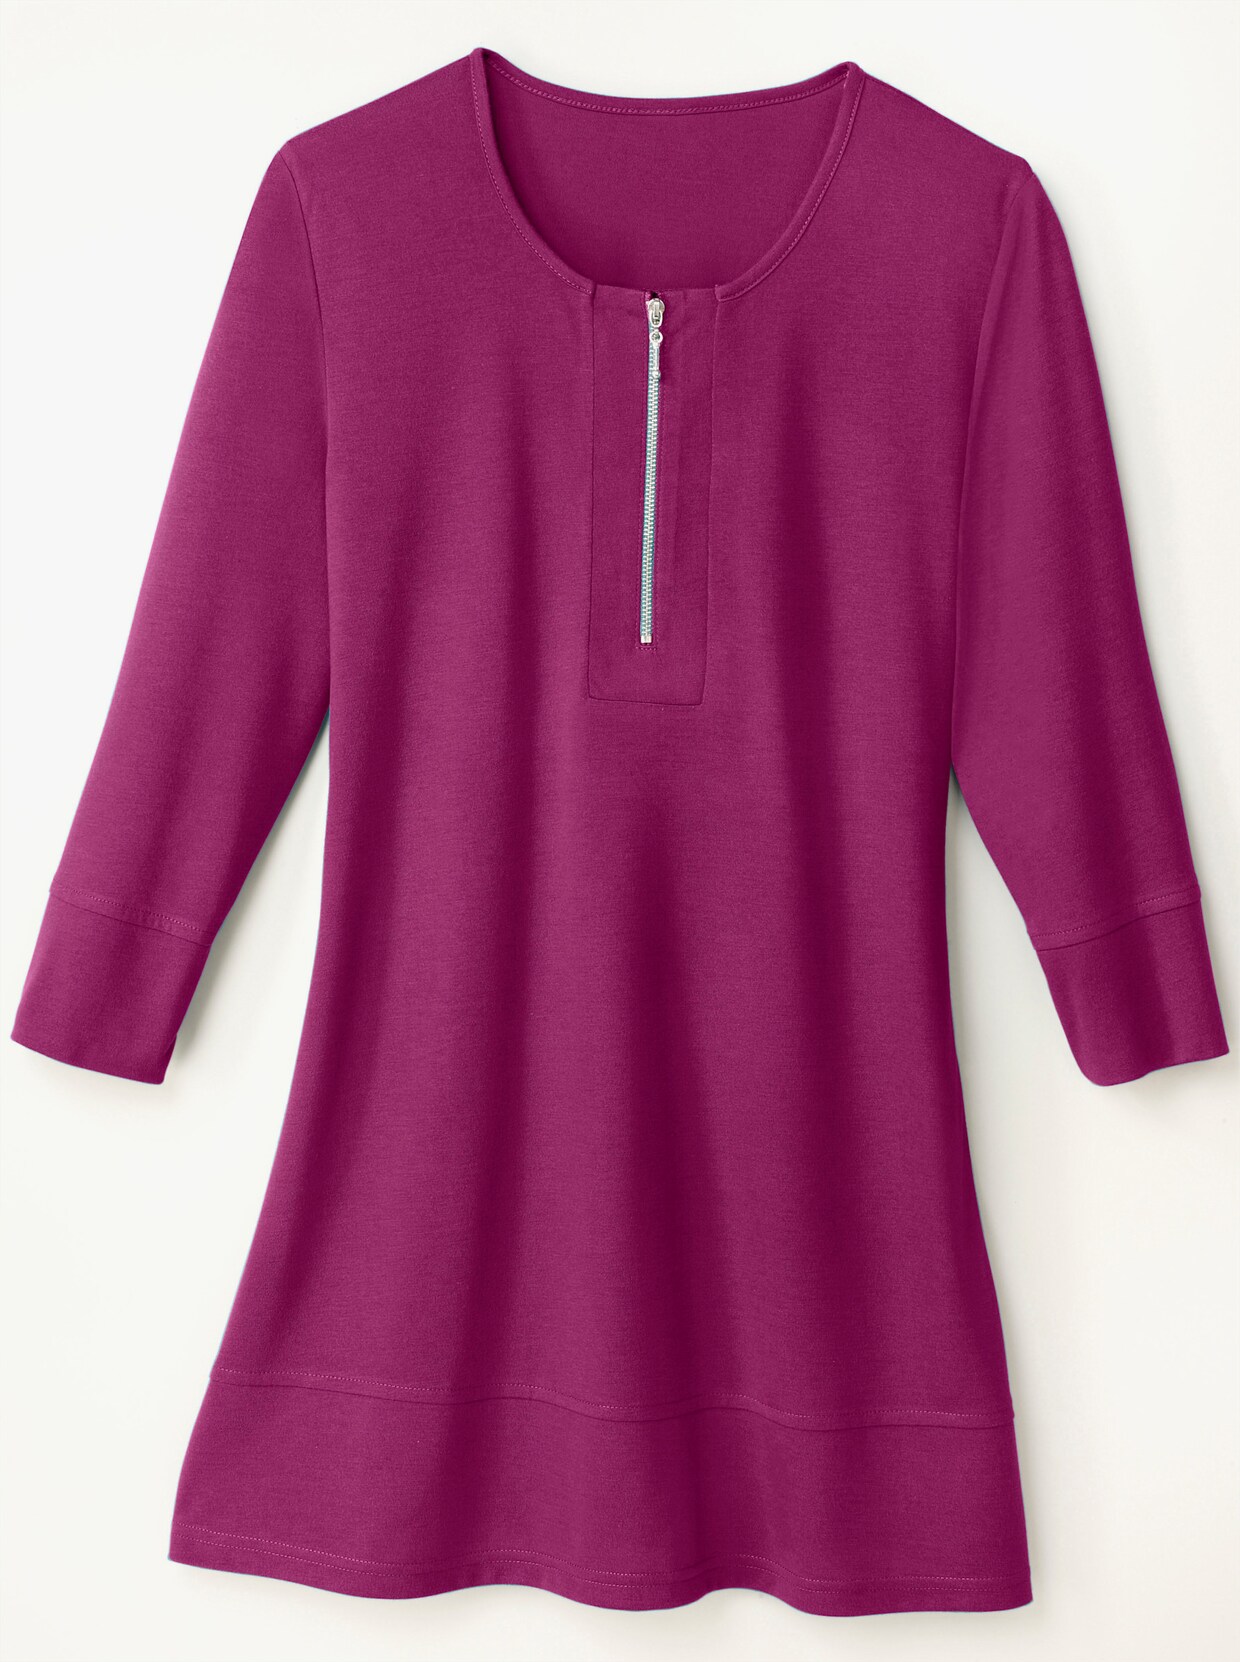 Dlhé tričko - purpurová